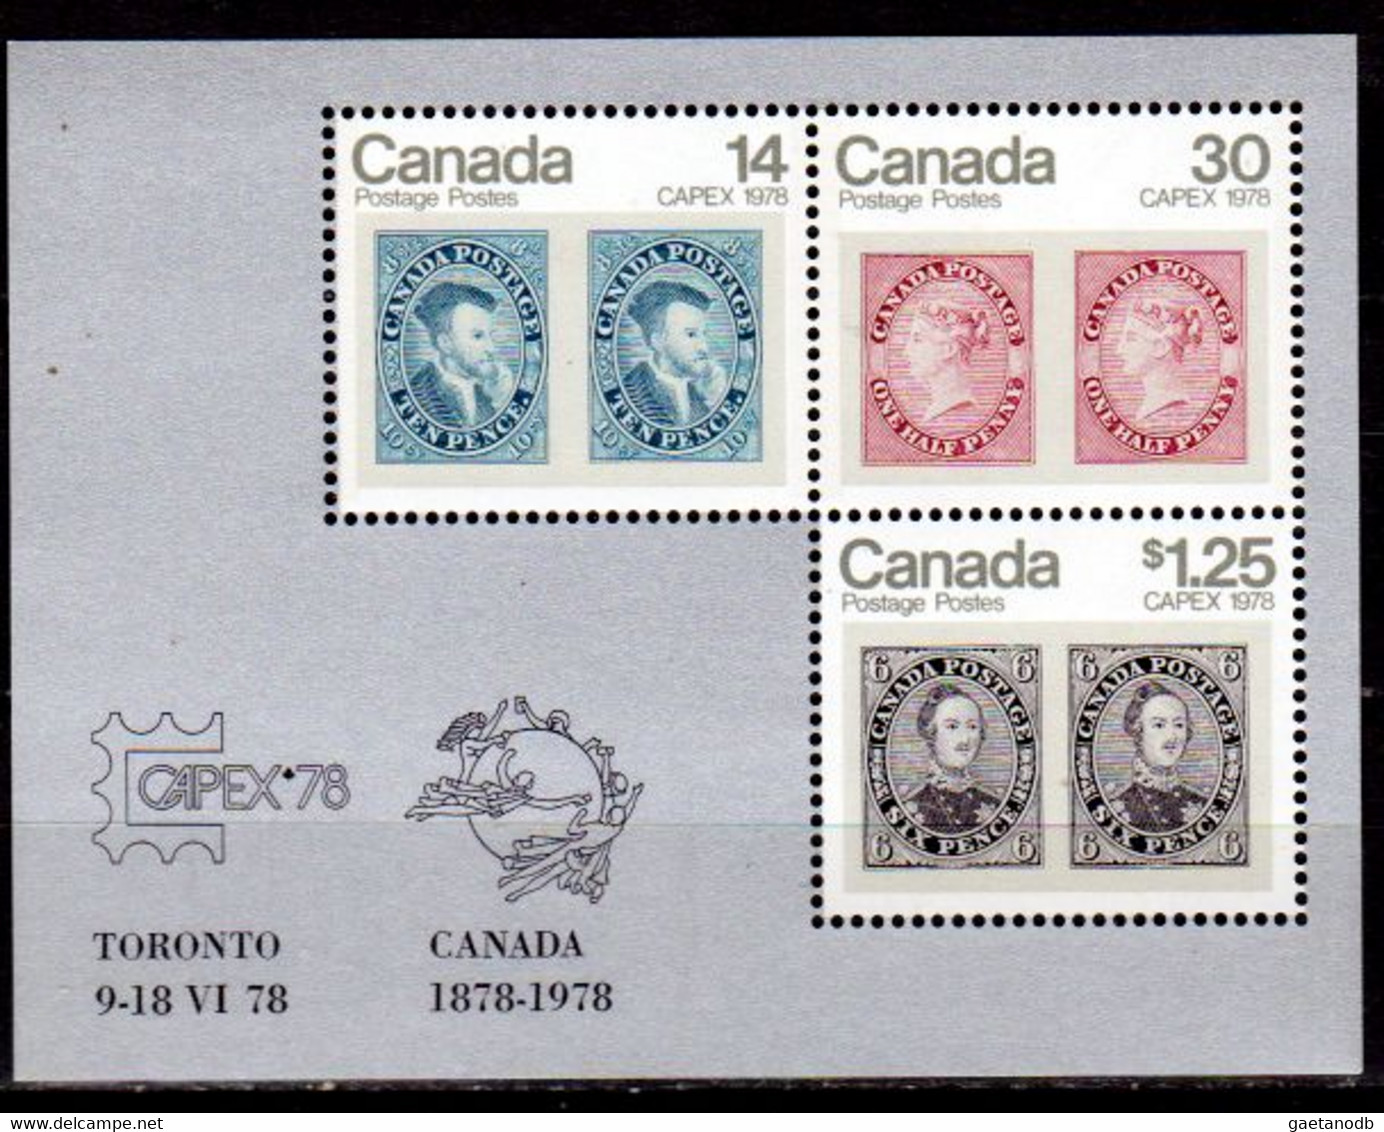 Canada-0065: Emissione 1978 (++) MNH - Qualità A Vostro Giudizio. - Pages De Carnets